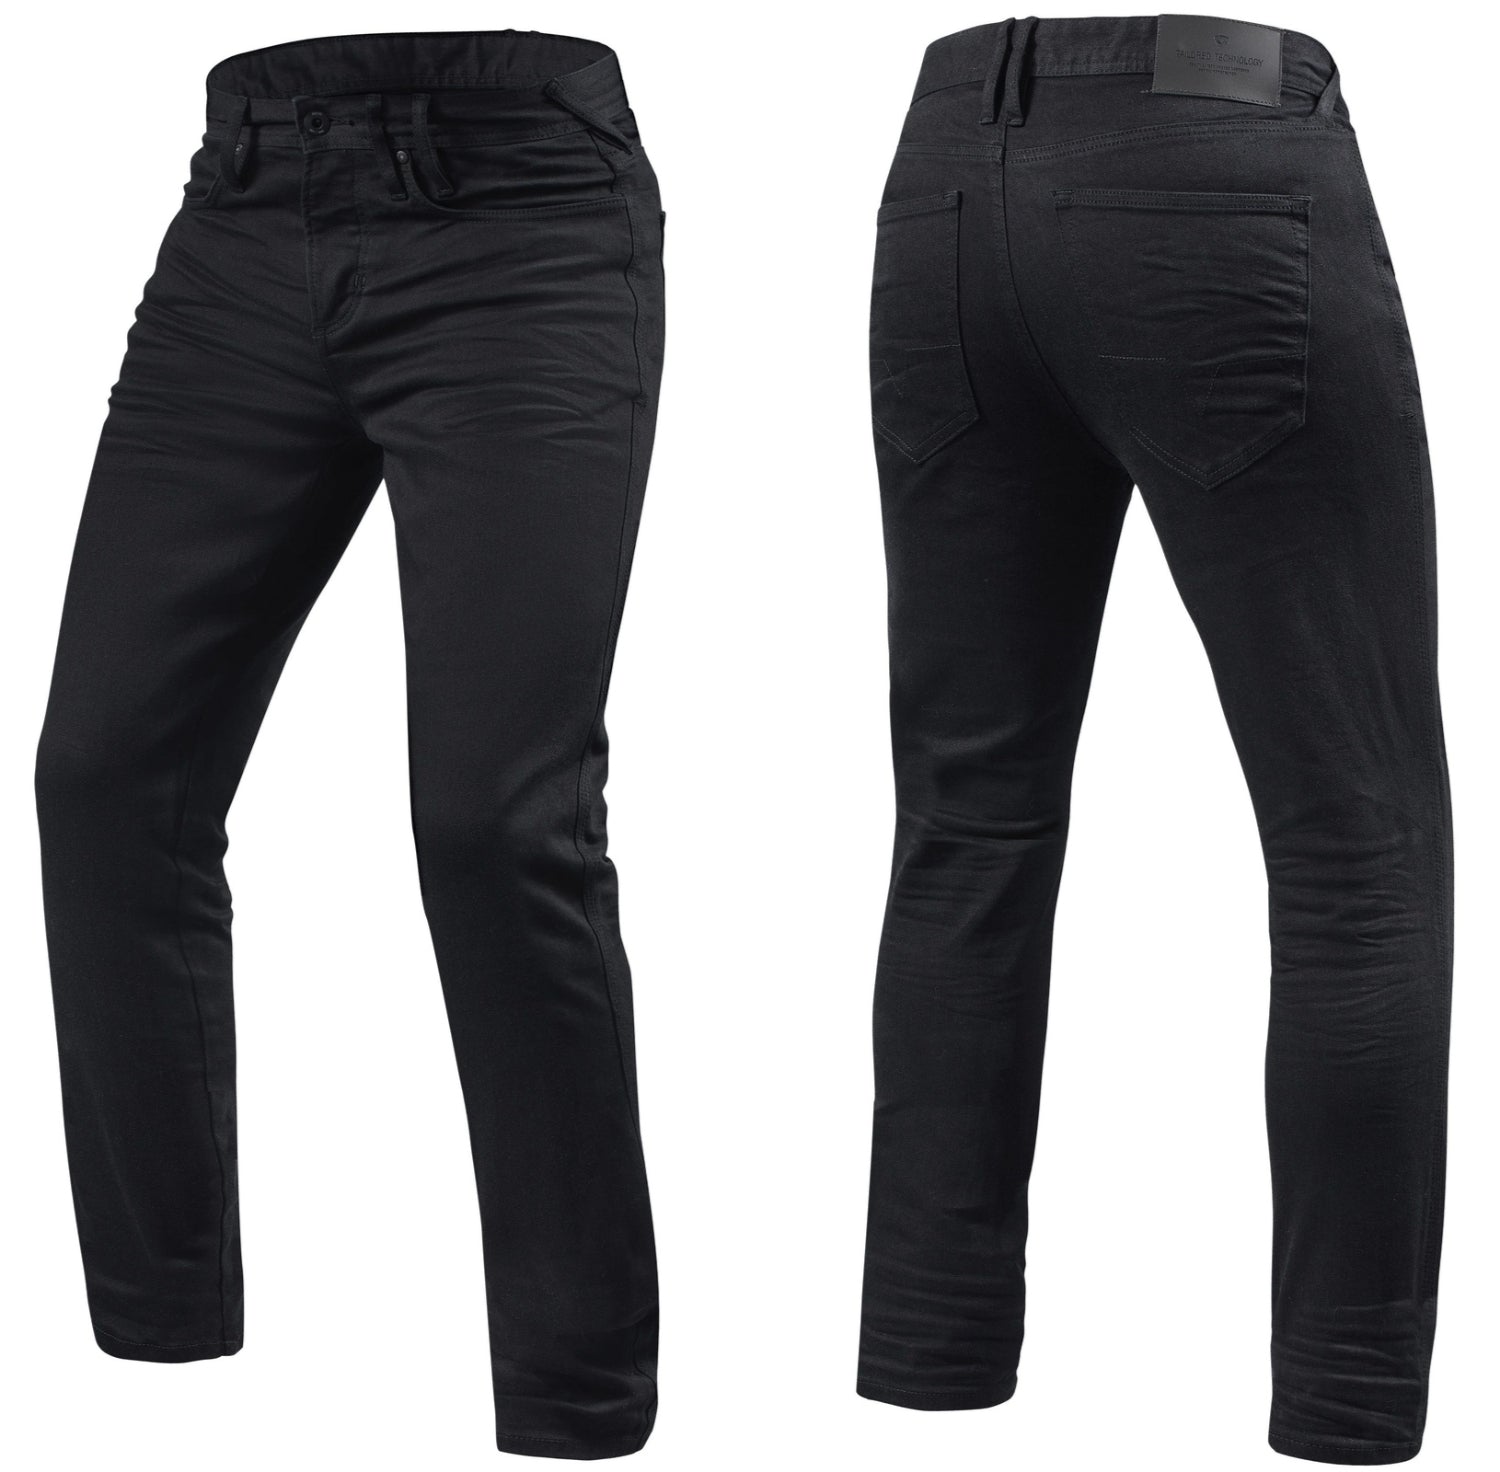 Black Kevlar Jeans